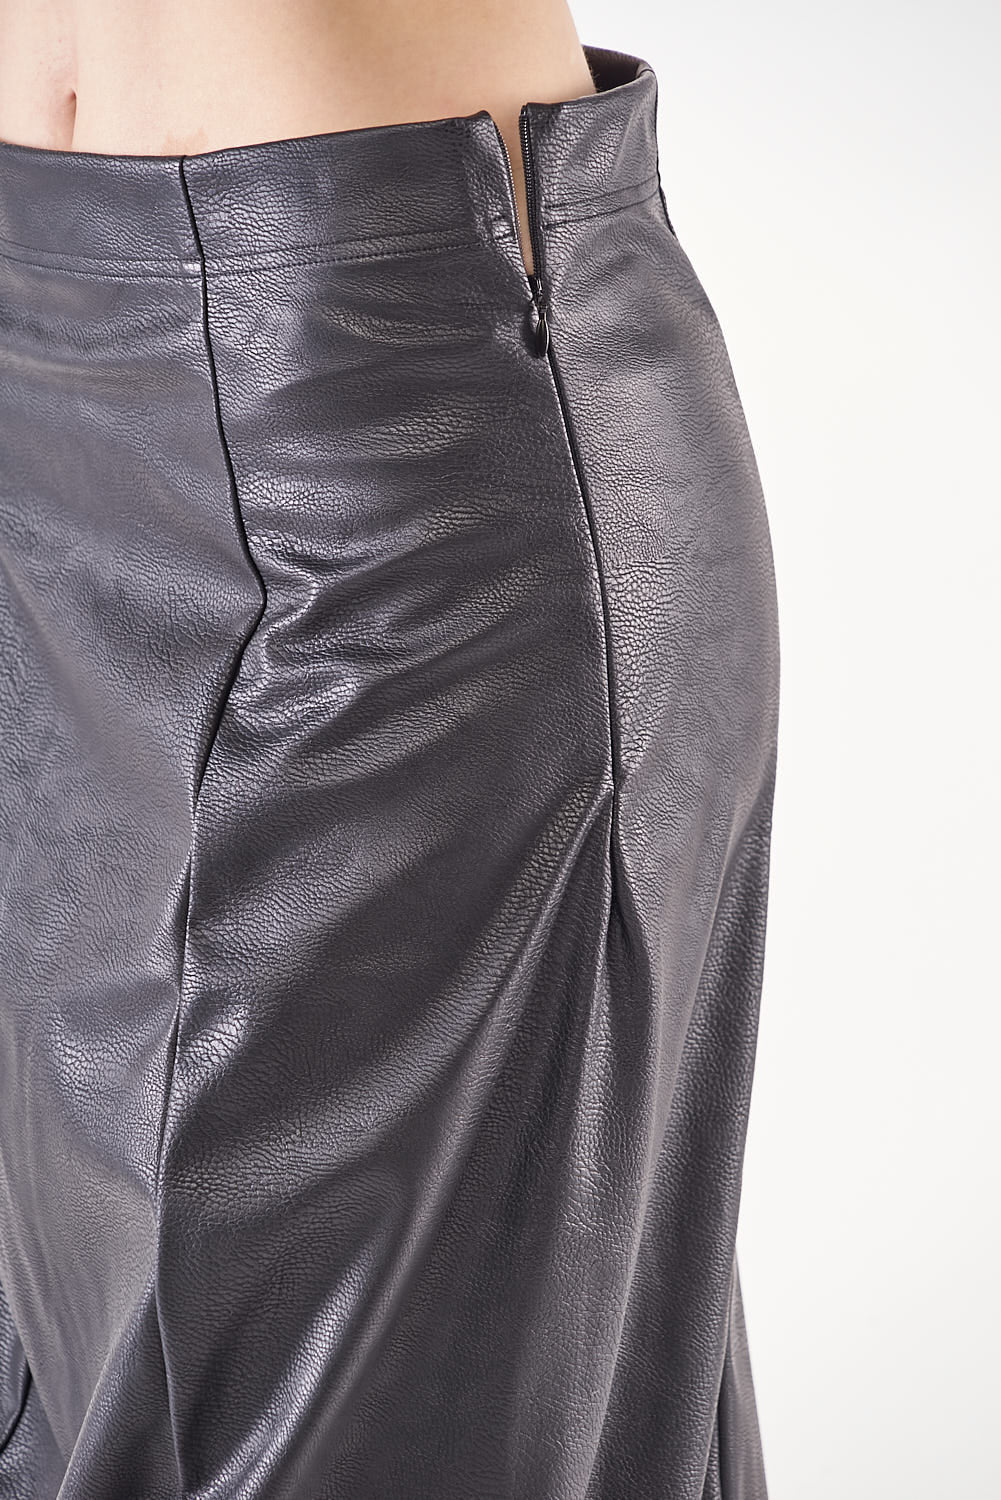 RUB-332-0302 Leather Look Skirt